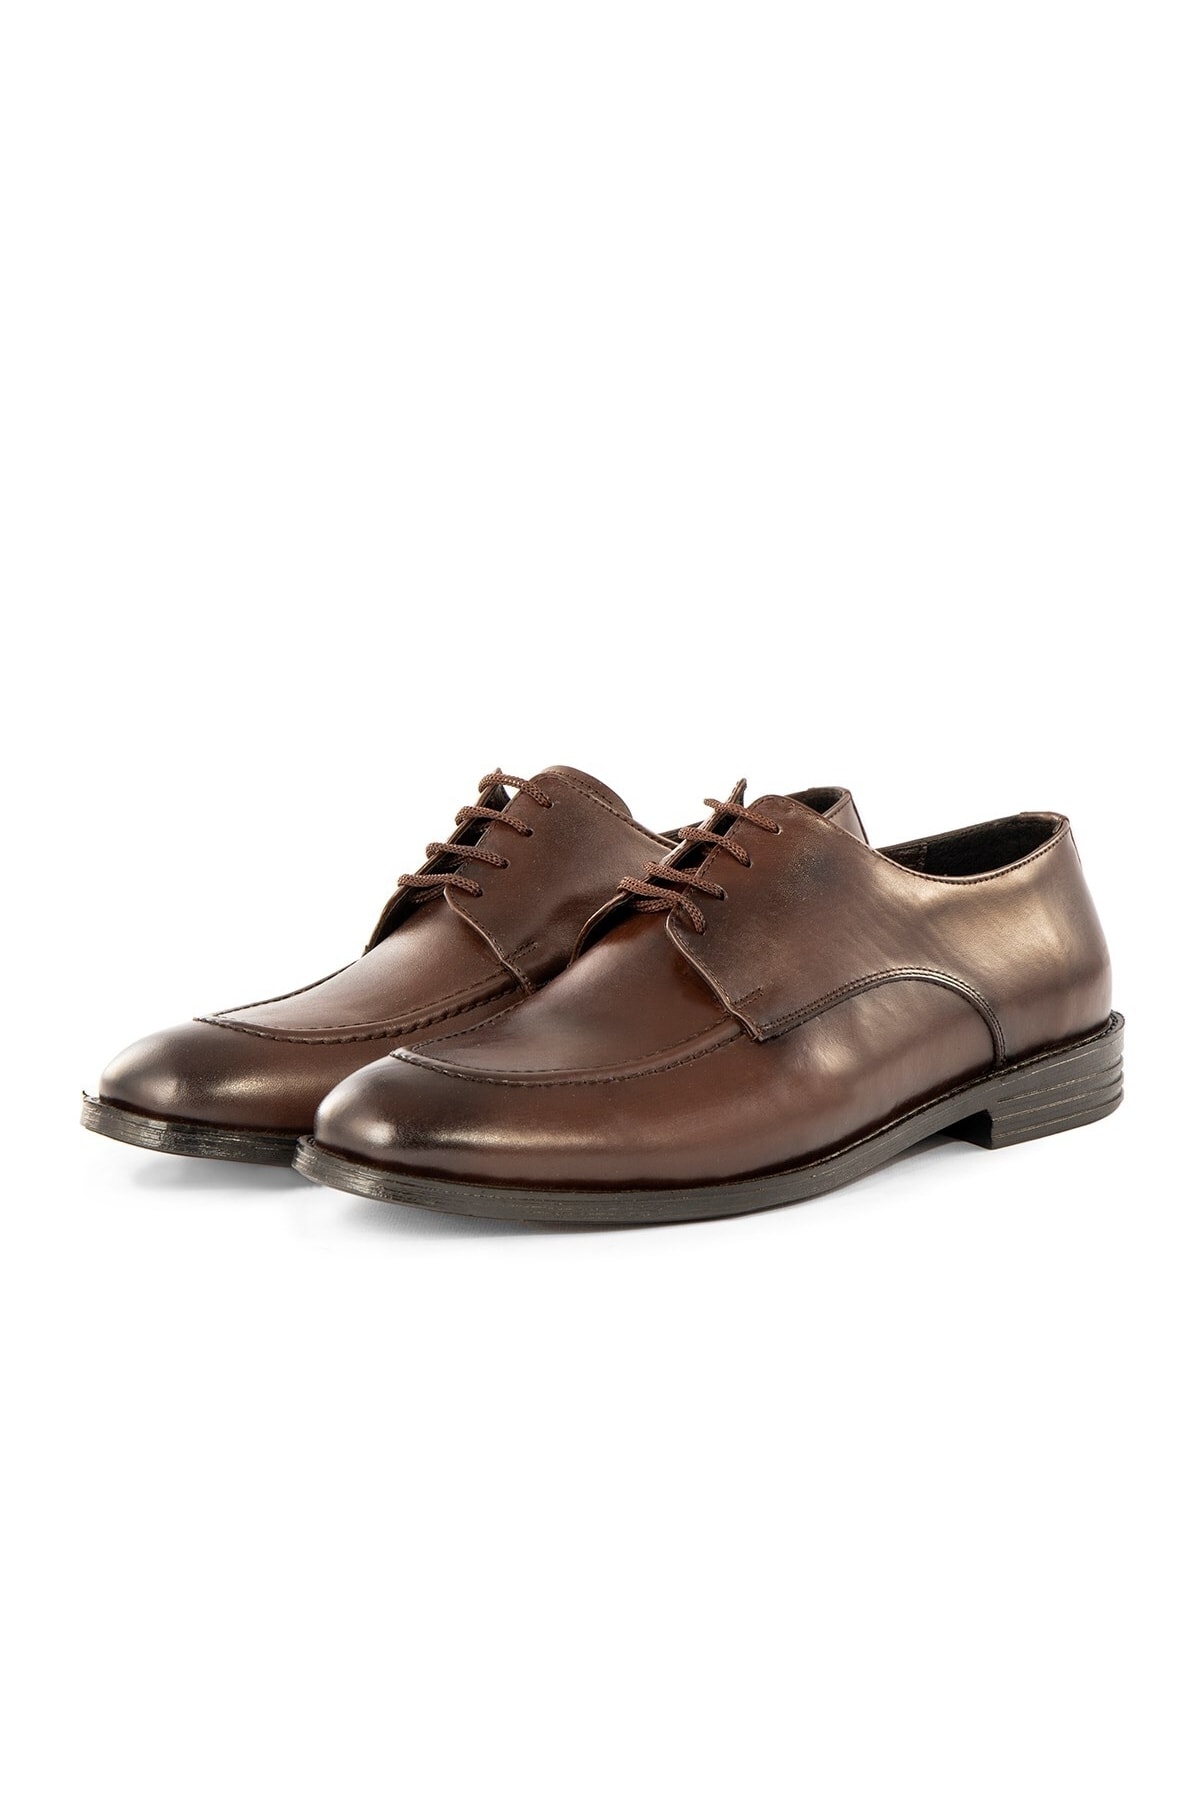 Levně Ducavelli Tira Genuine Leather Men's Classic Shoes, Derby Classic Shoes, Laced Classic Shoes